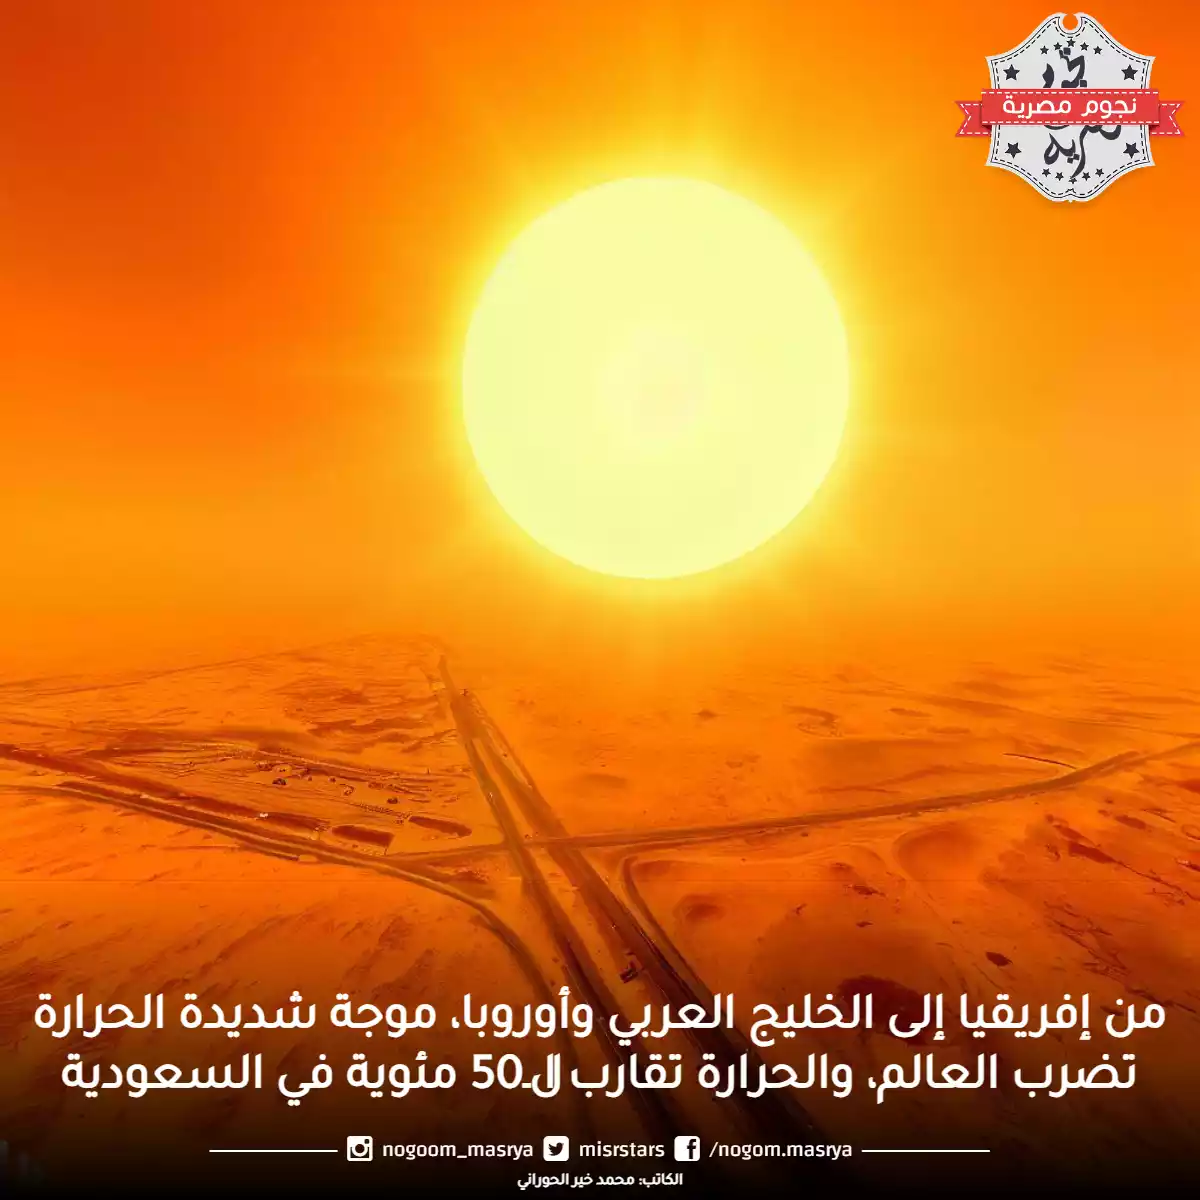 من إفريقيا إلى الخليج العربي وأوروبا، موجة شديدة الحرارة تضرب العالم، والحرارة تقارب الـ50 مئوية في السعودية